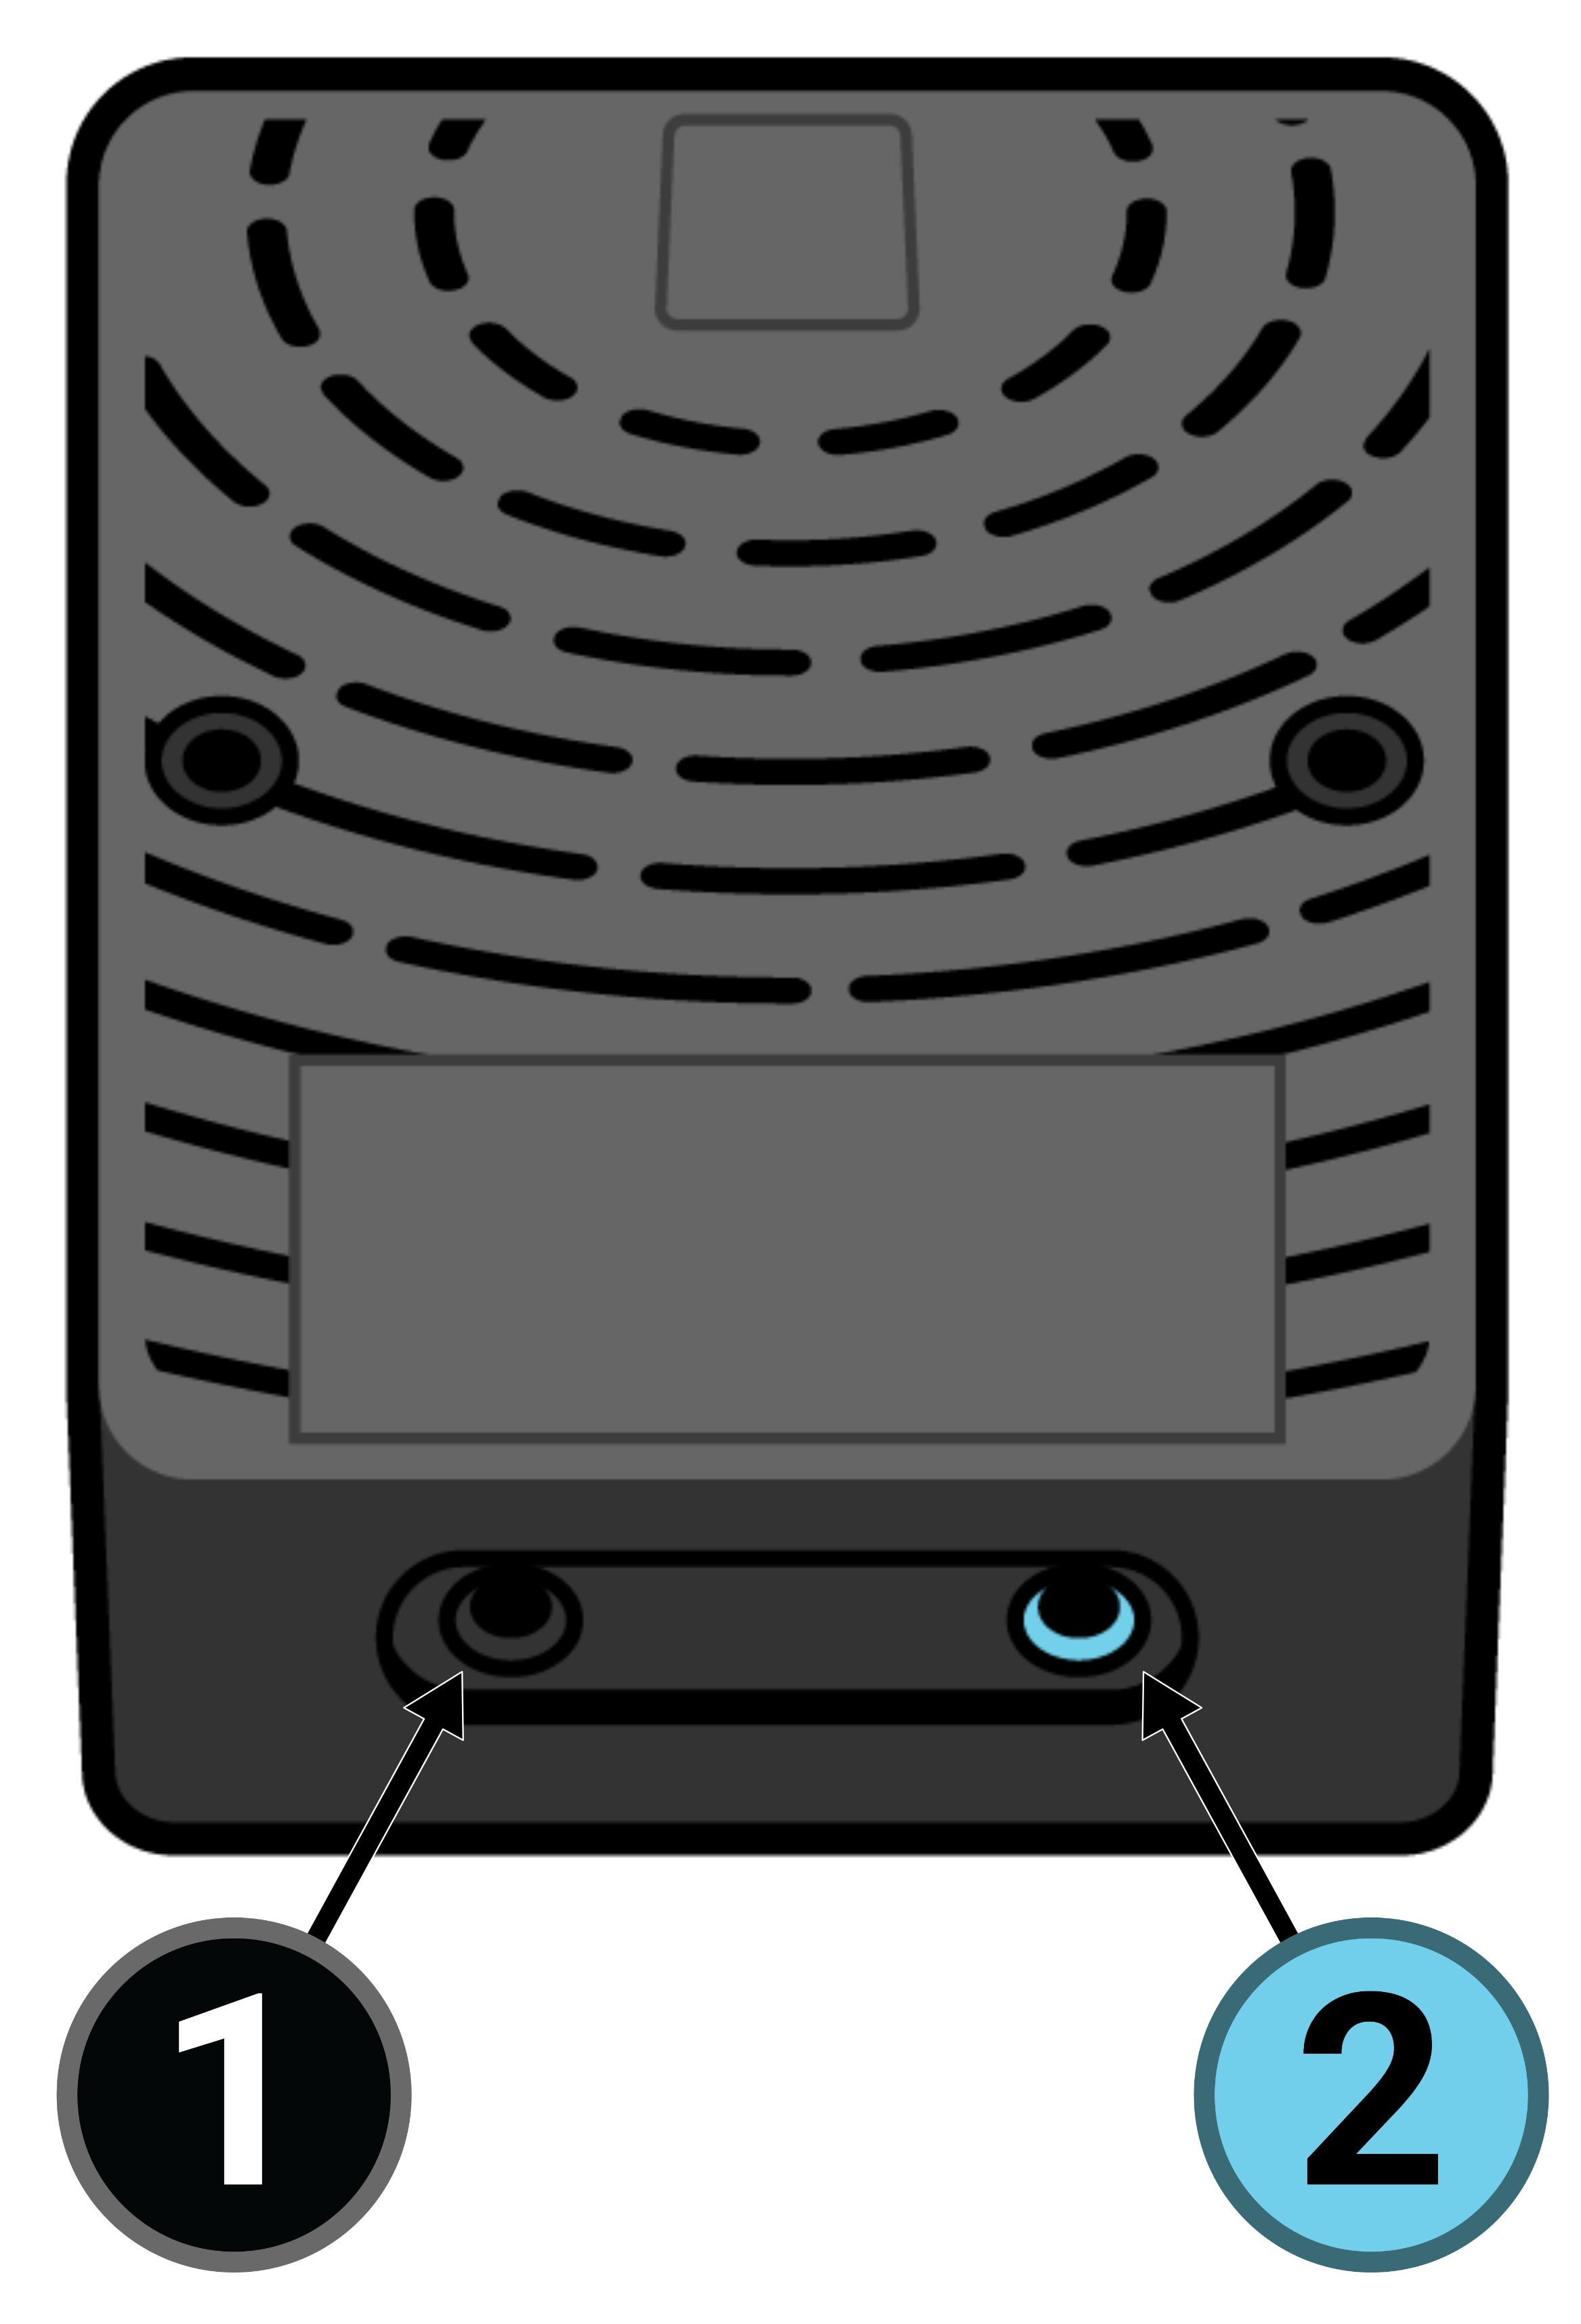 这是黑色 Sleeptracker-AI 处理器的俯视图，USB 电缆朝上，圆形通风口朝向观察者。左侧是一个黑色小圆形端口，标有